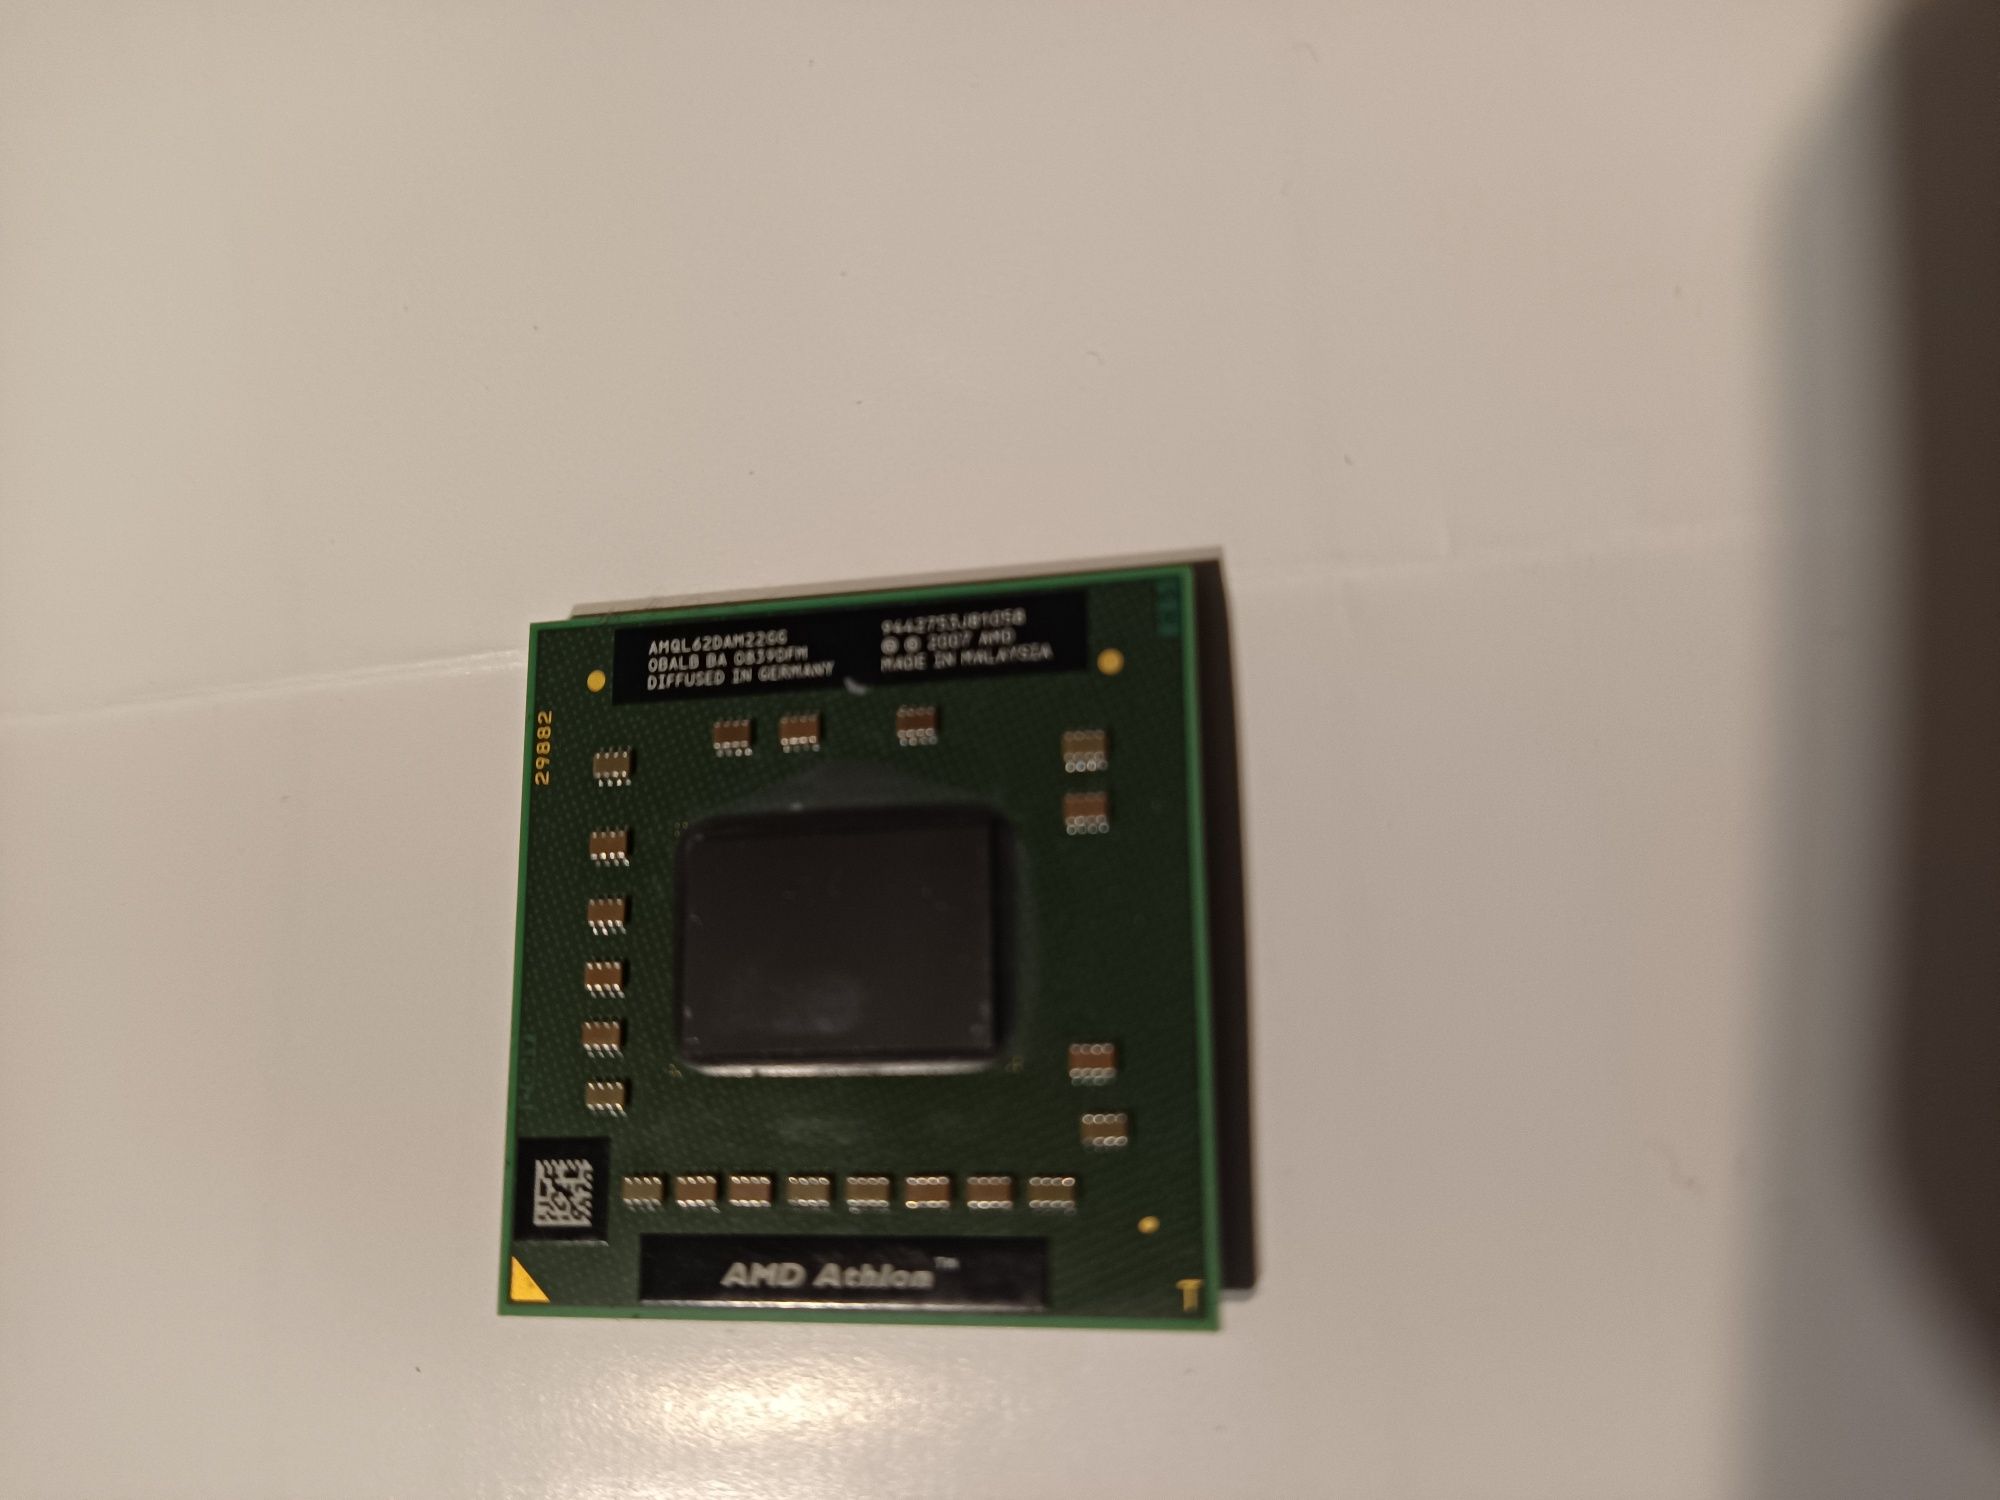 Procesor AMD Athlon 64 X2 QL-62